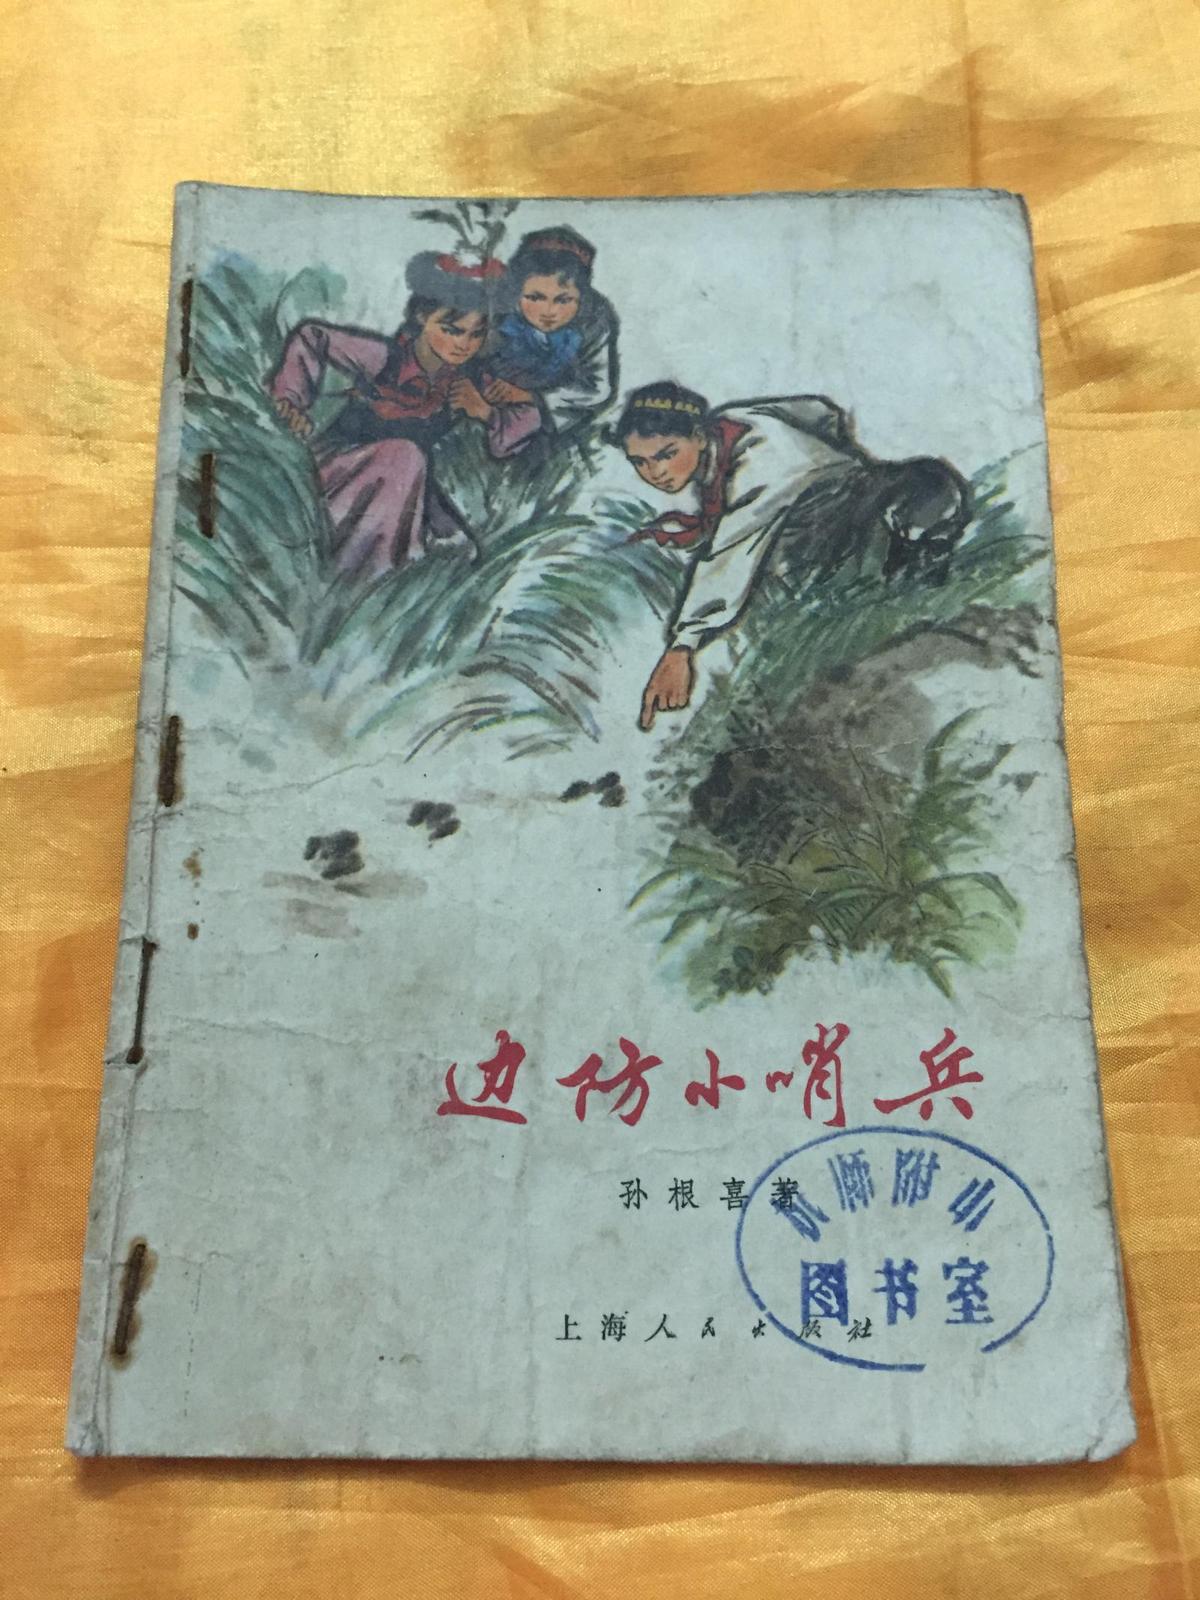 边防小哨兵 何祖明插图 ** 上海人民出版社 1974年一版一印